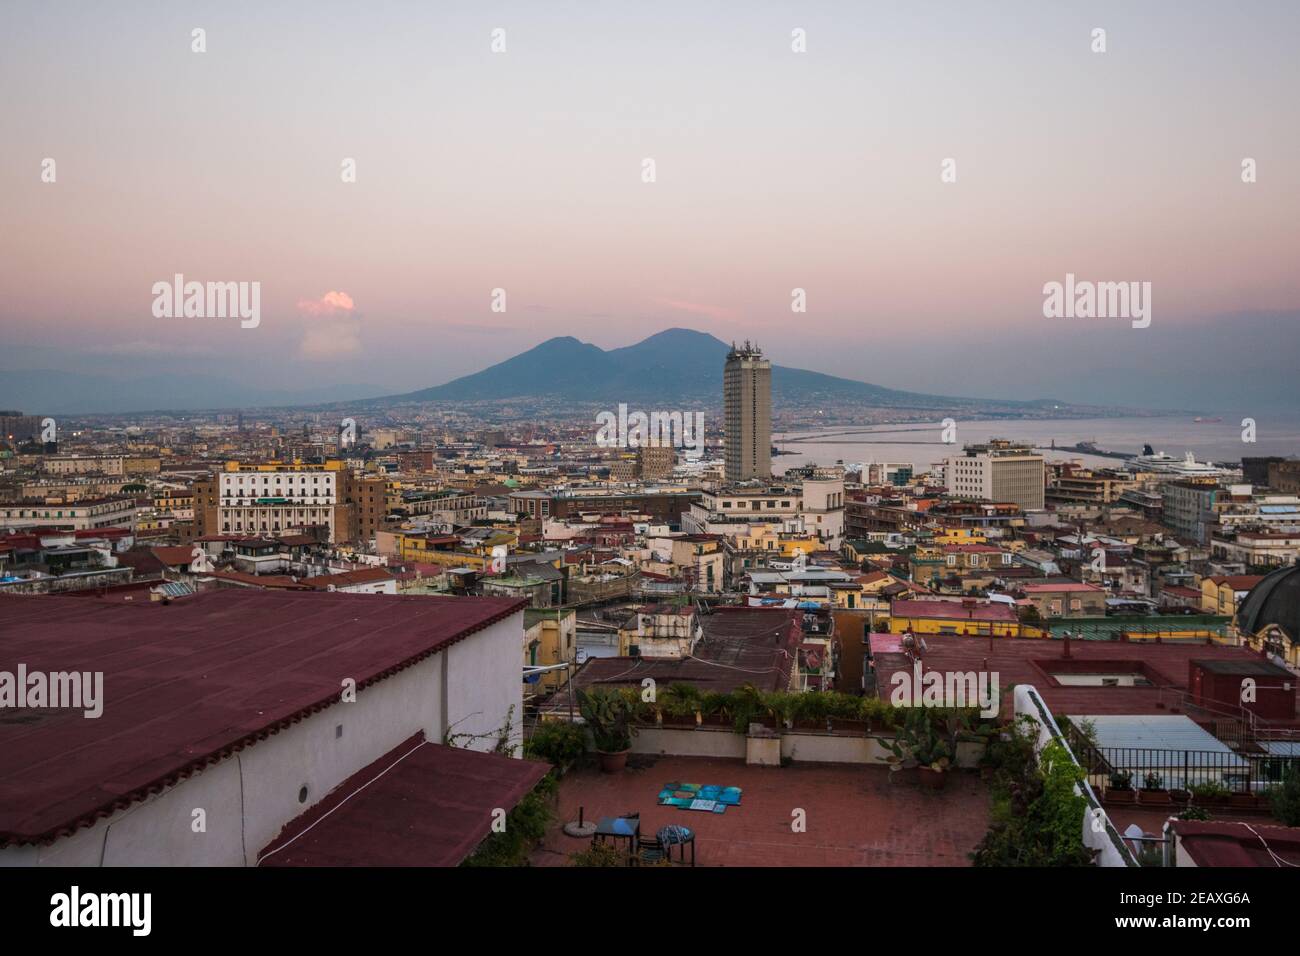 Vue panoramique sur les toits de la ville de Naples, dans le sud de l'Italie, pendant un coucher de soleil rose. Banque D'Images